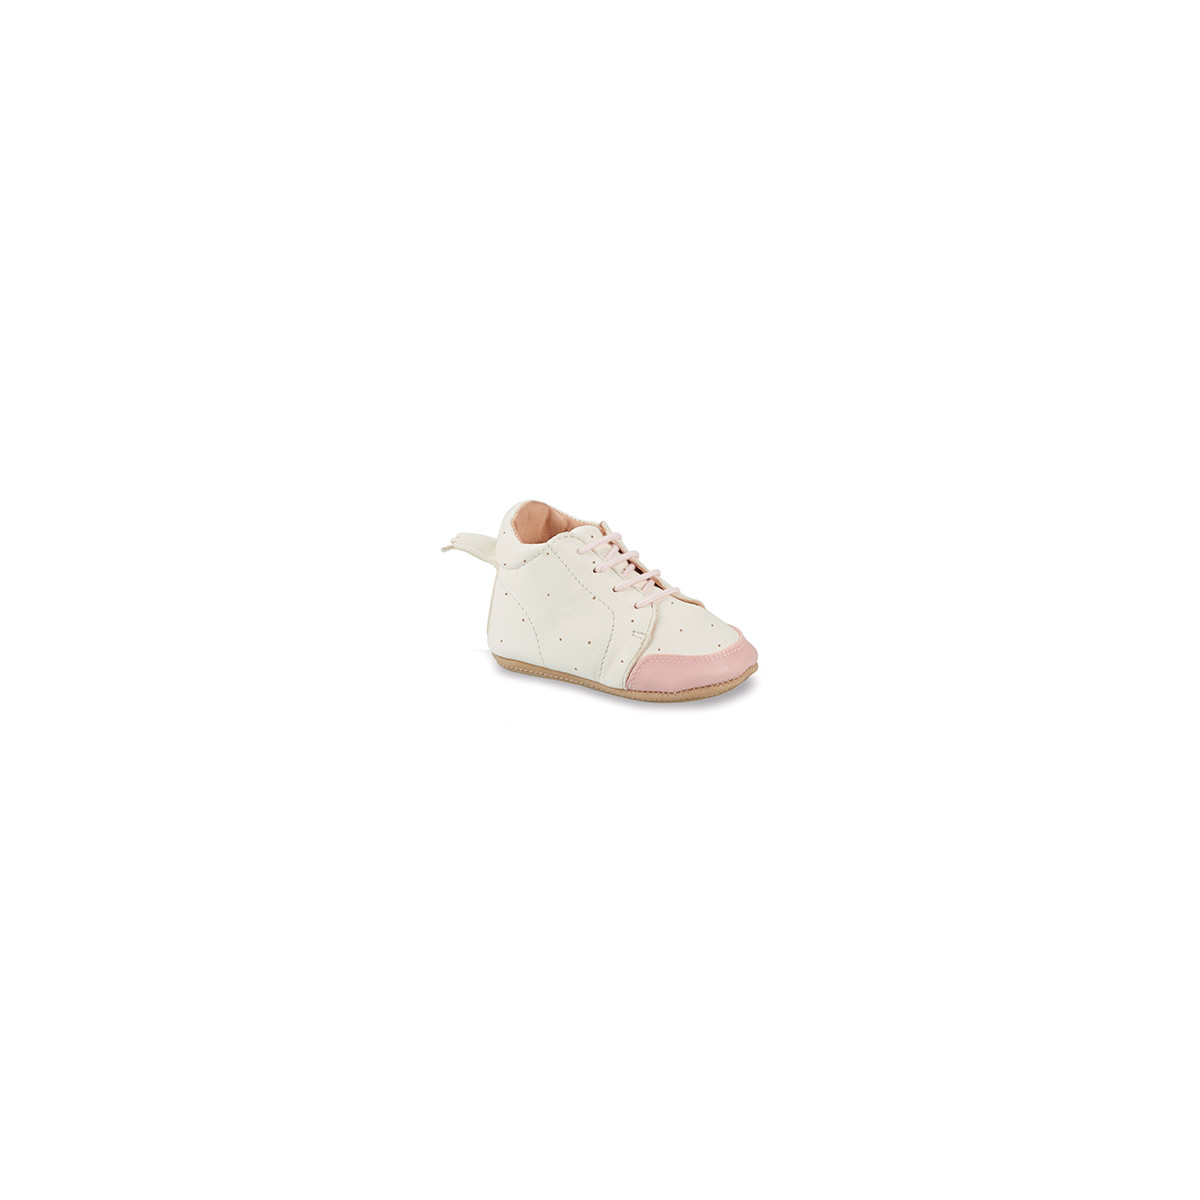 Chaussures Enfant sous 30 jours IGO B Blanc